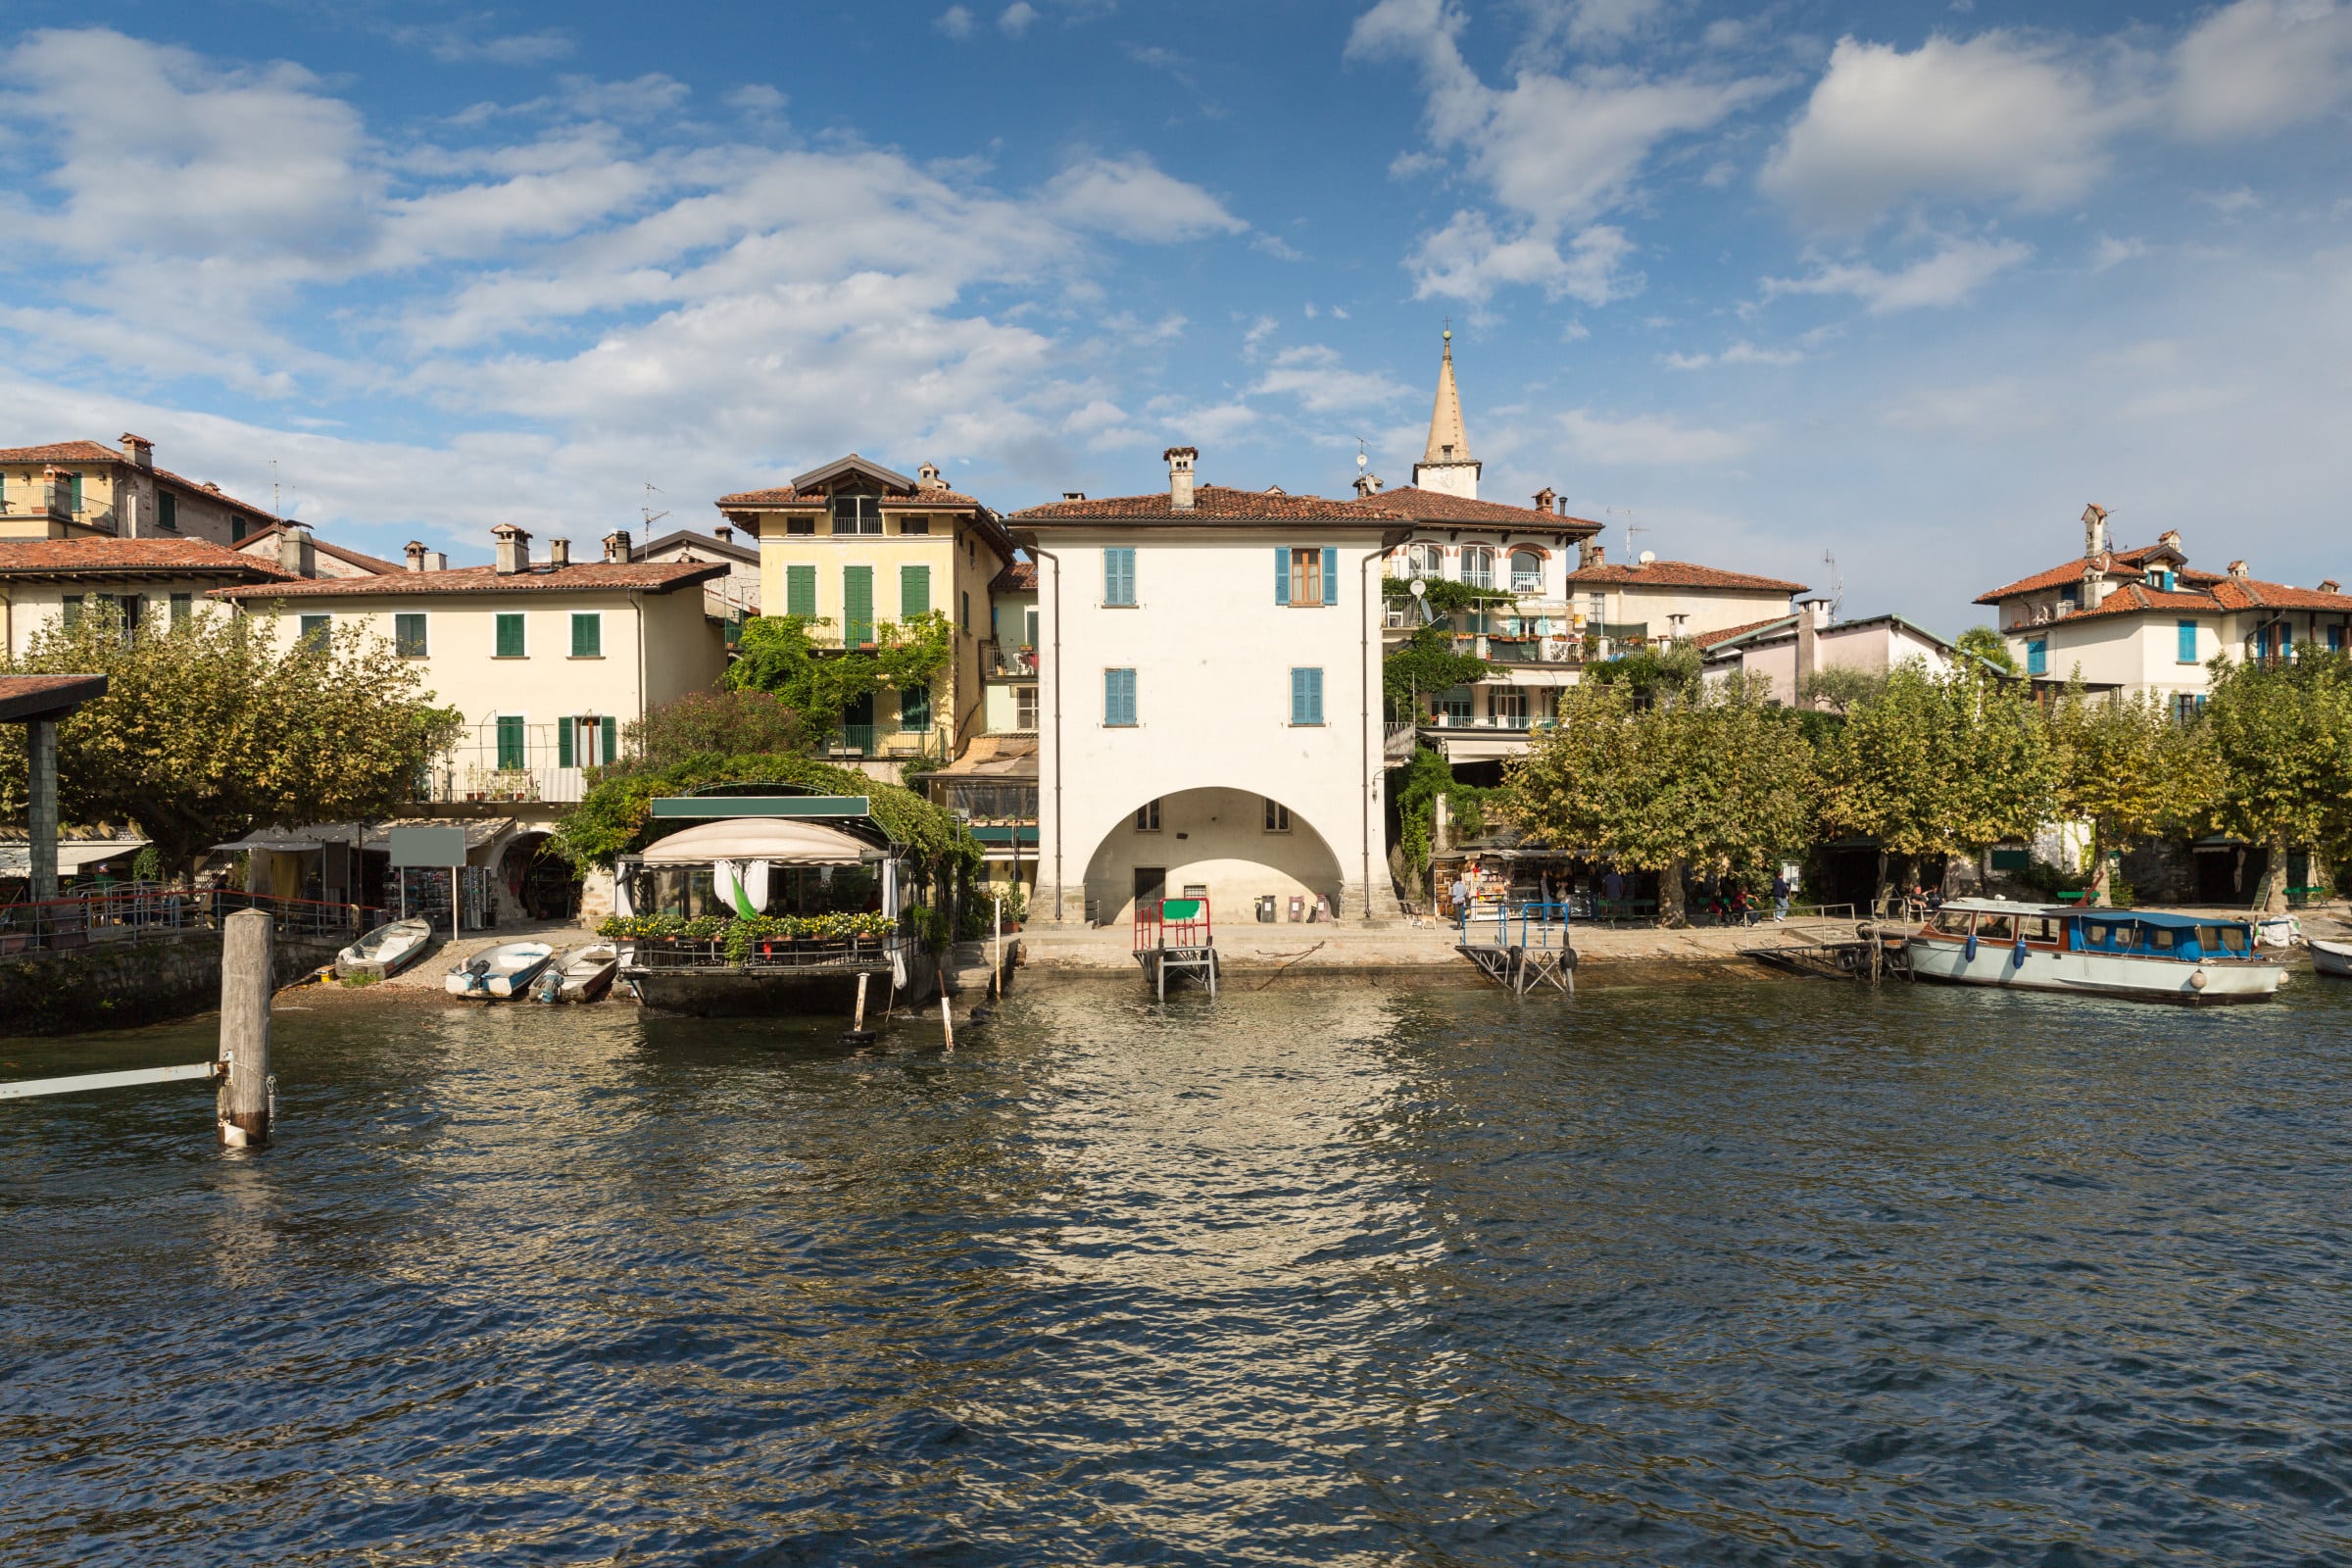 Isola dei Pescatori on Lake Maggiore - Lake Maggiore and Borromean Islands Boat Tour